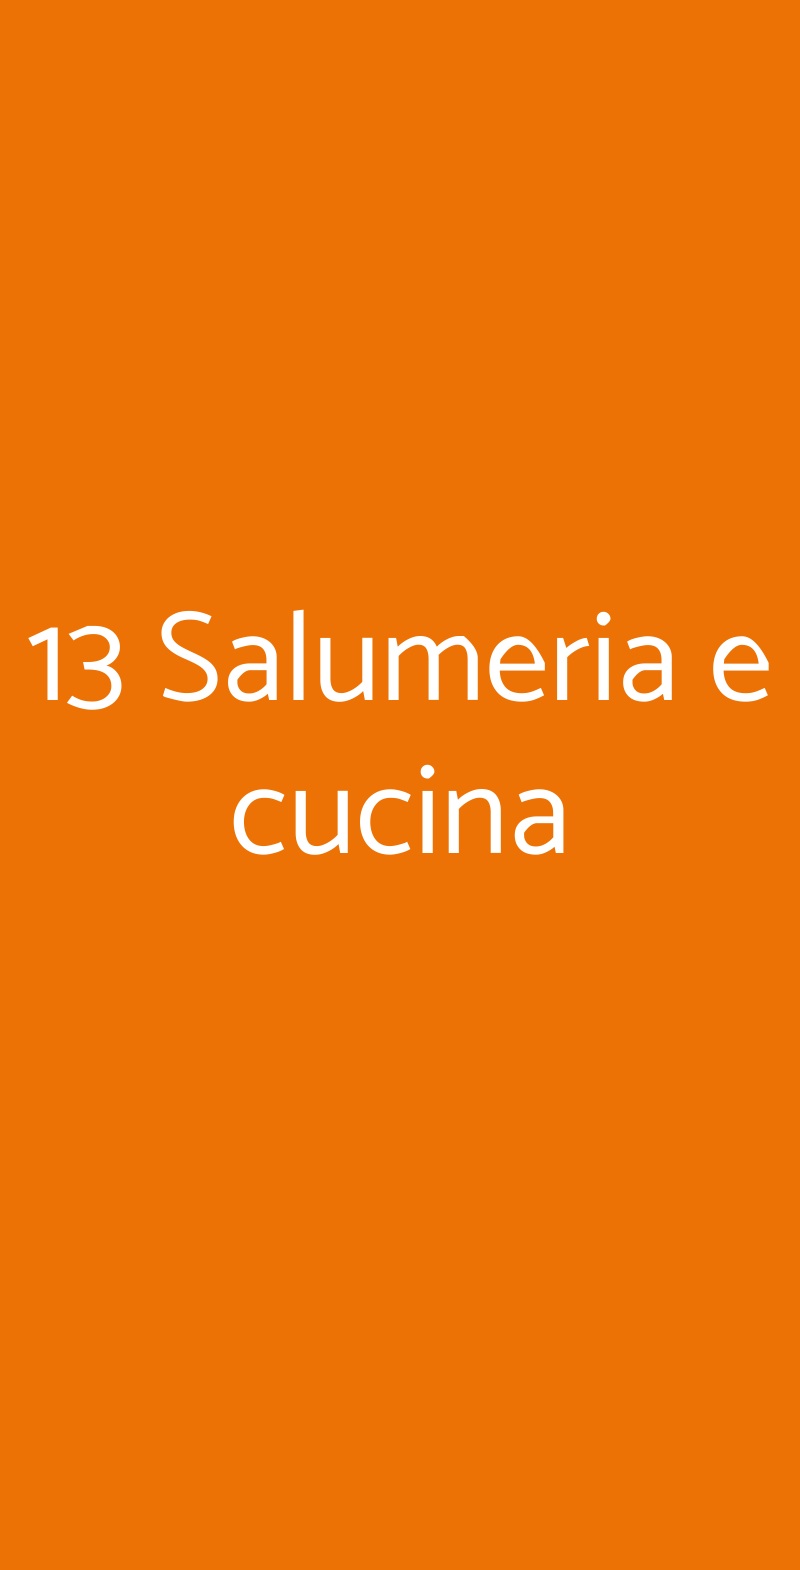 13 Salumeria e cucina Salerno menù 1 pagina